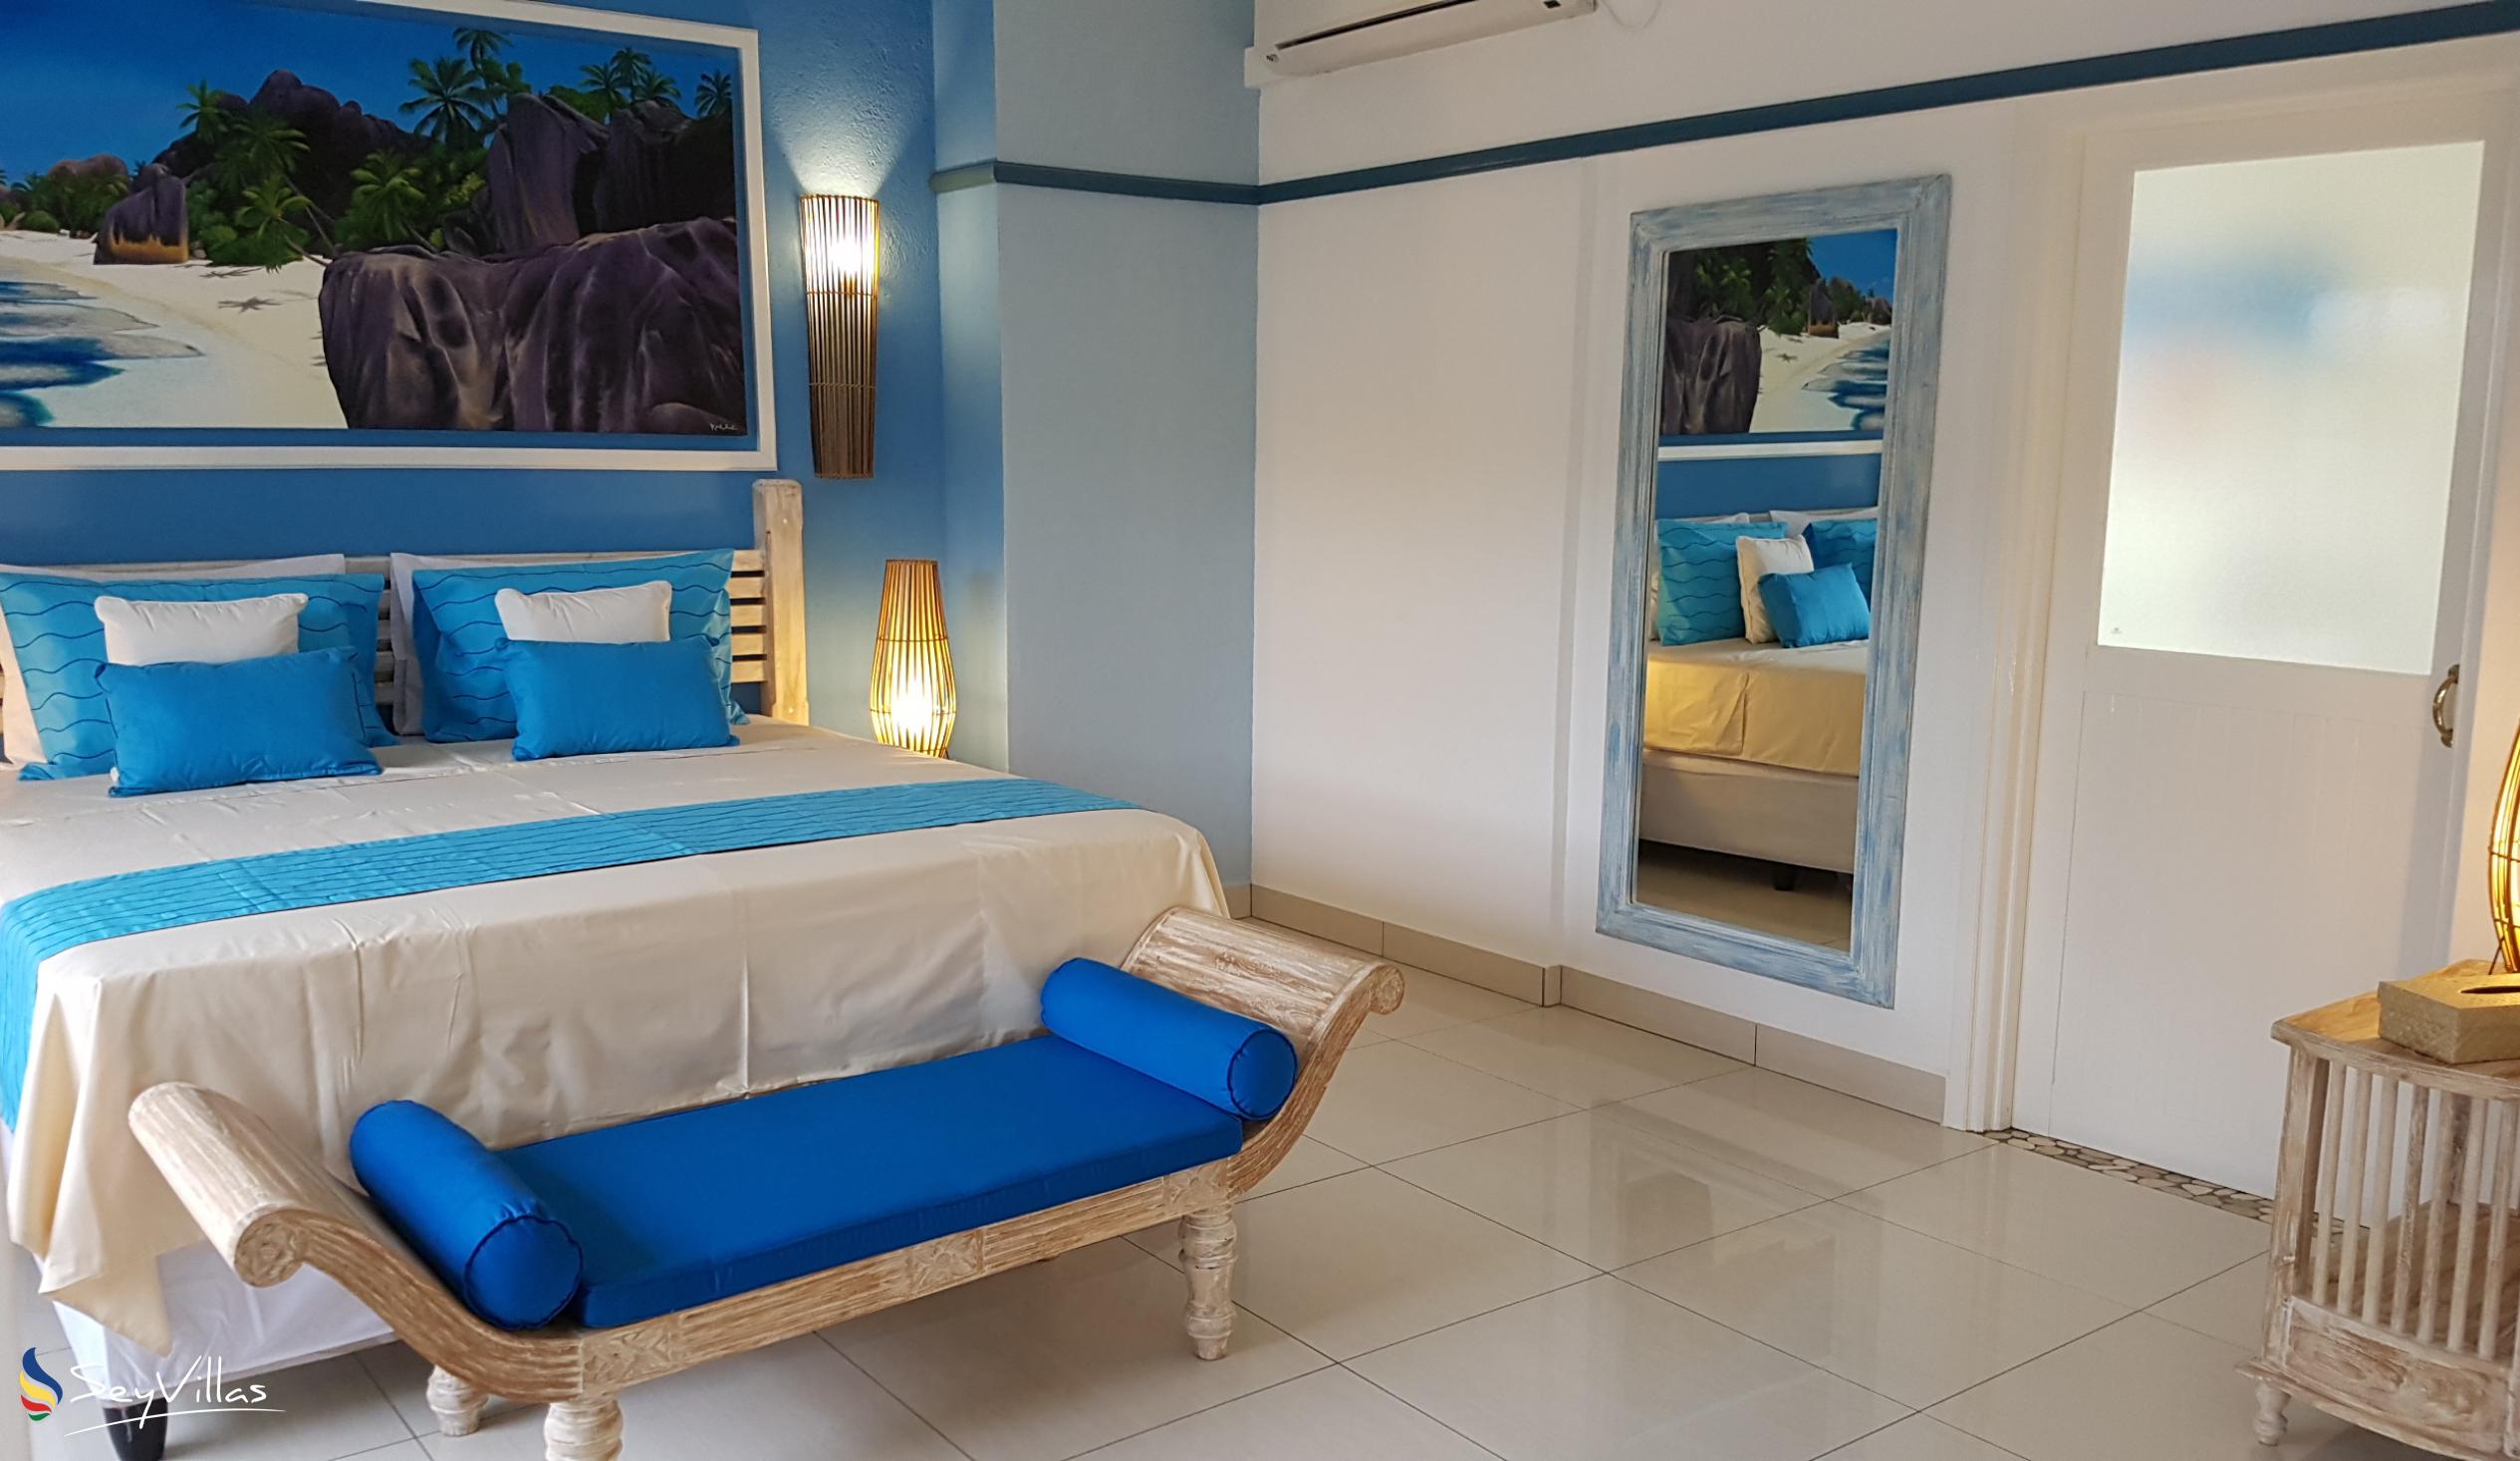 Foto 55: Villa Charme De L'ile - Appartamento Deluxe con vista piscina - La Digue (Seychelles)